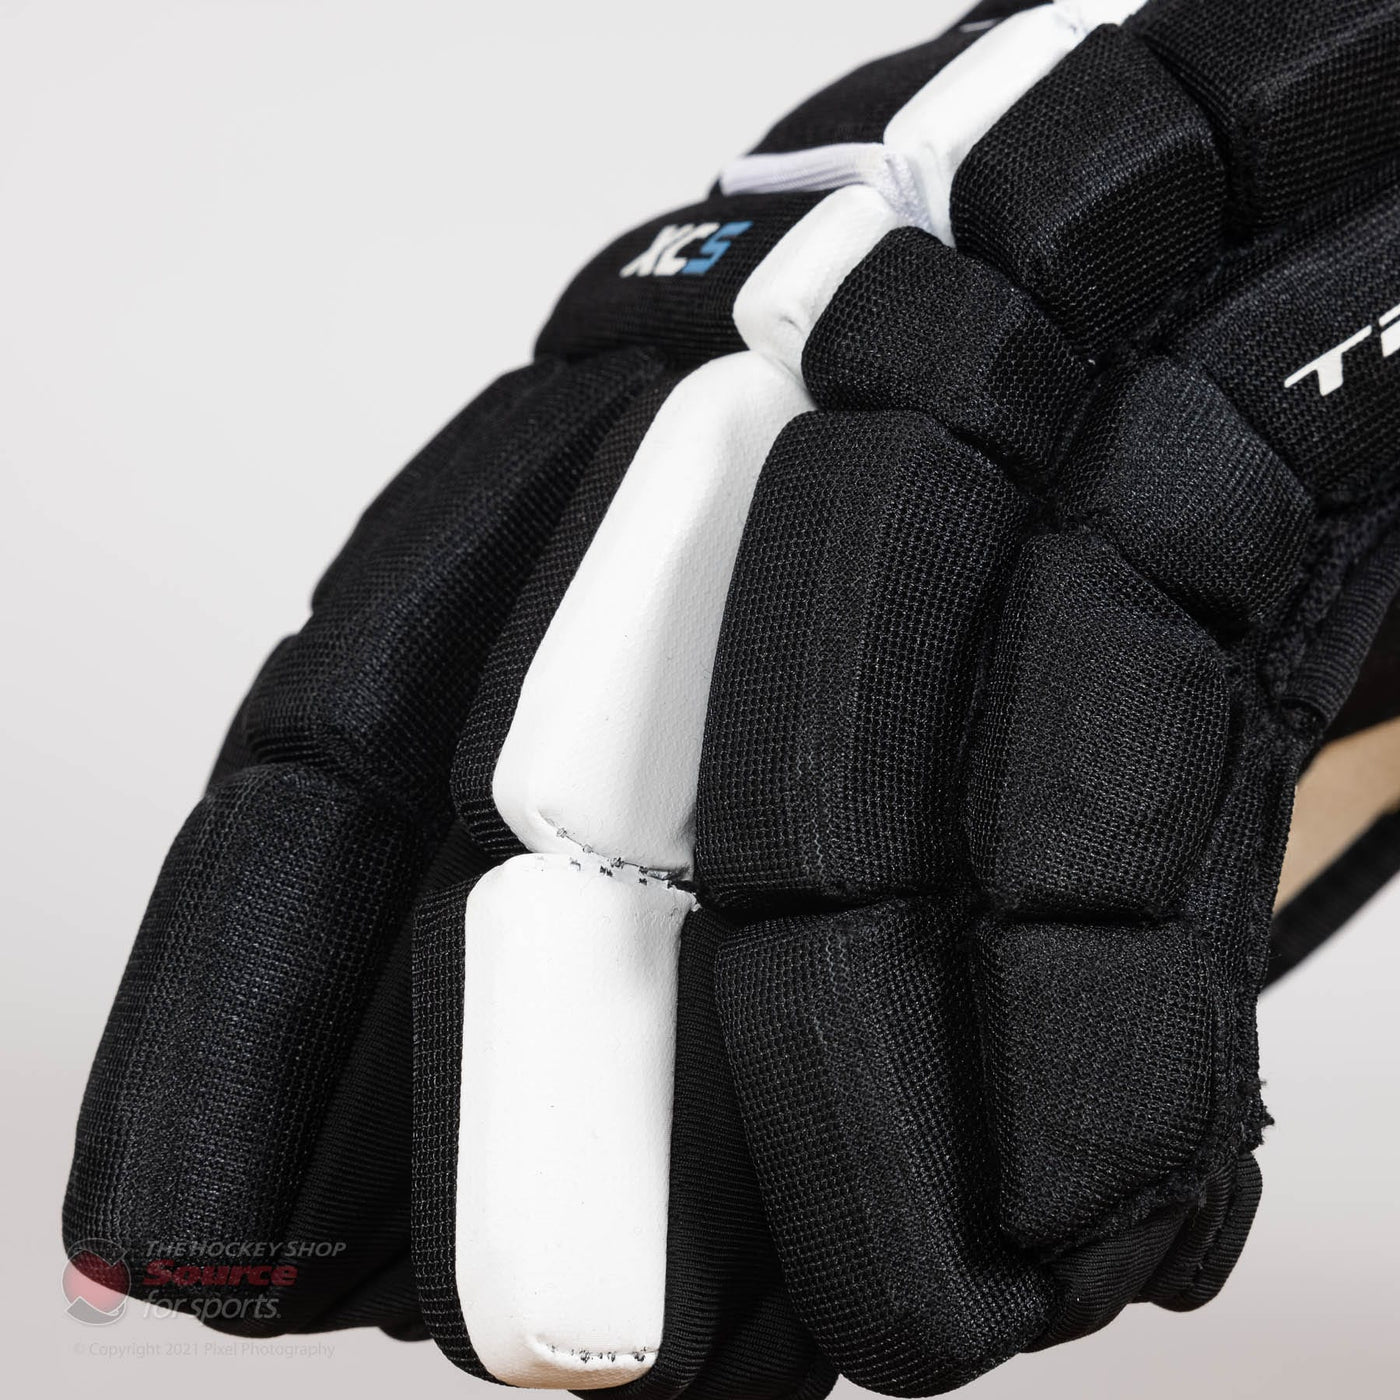 TRUE XC5 Senior Hockey Gloves